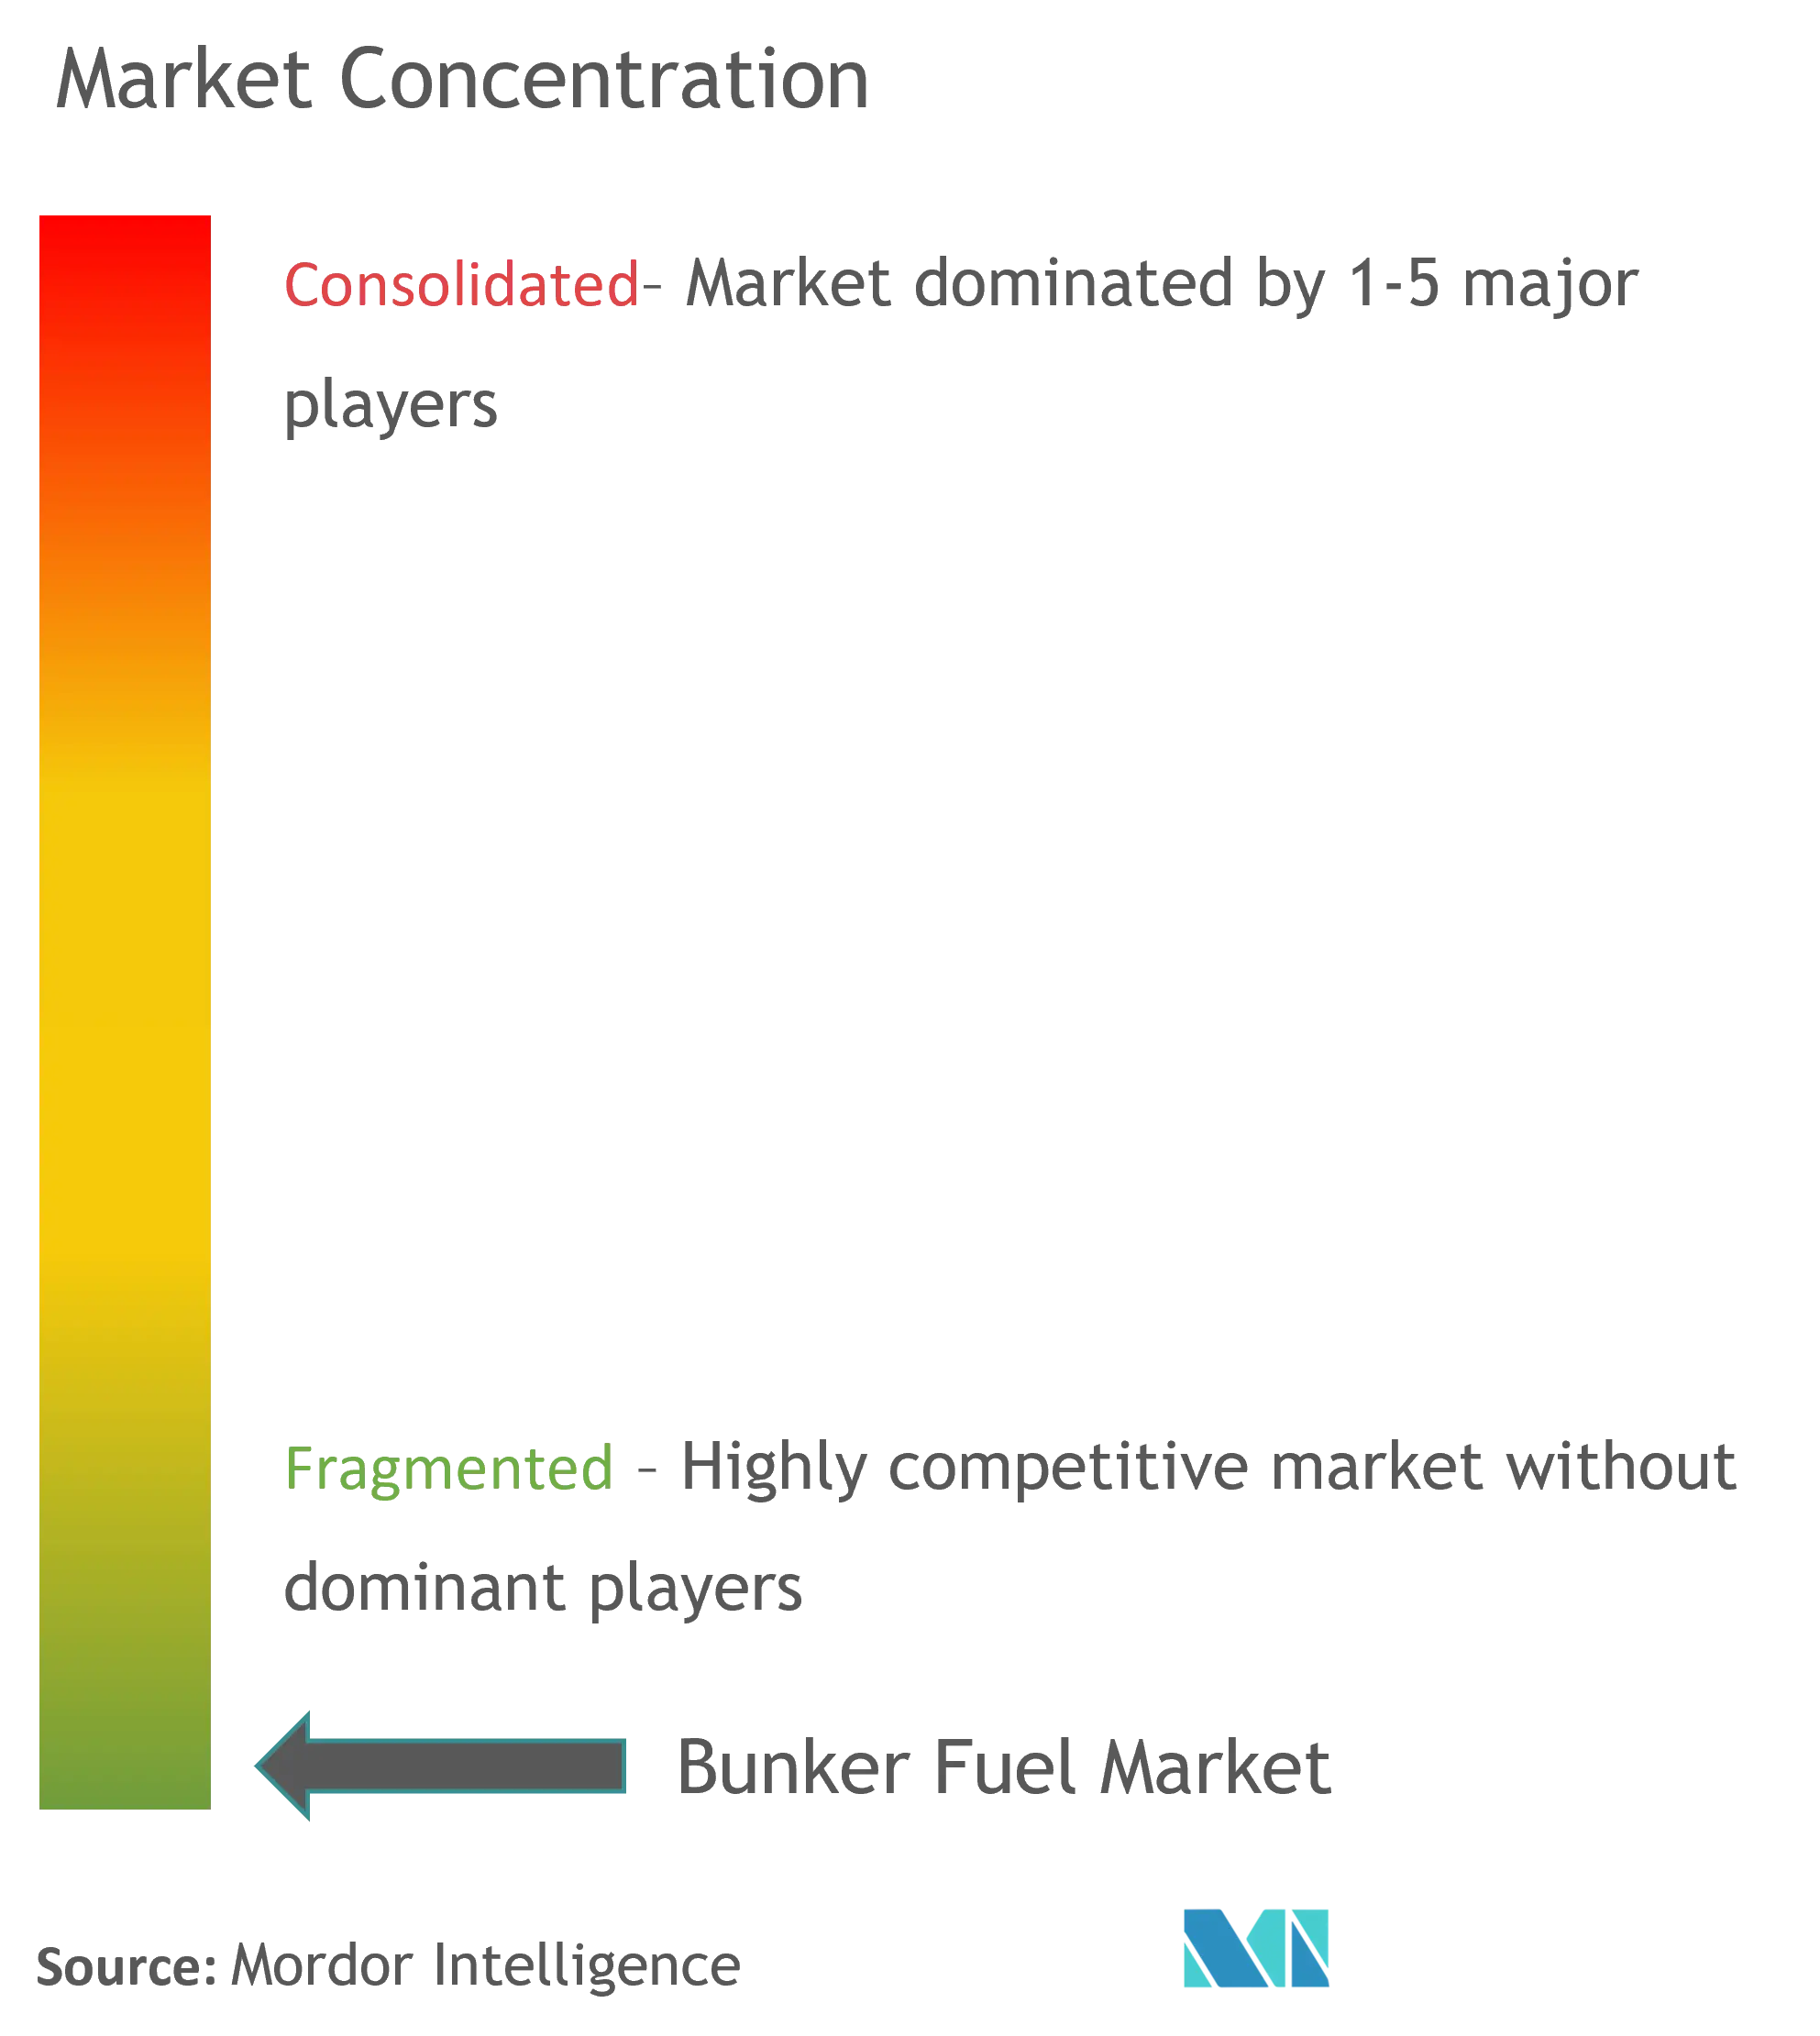 Market Concentration - Global Bunker Fuel Market.png